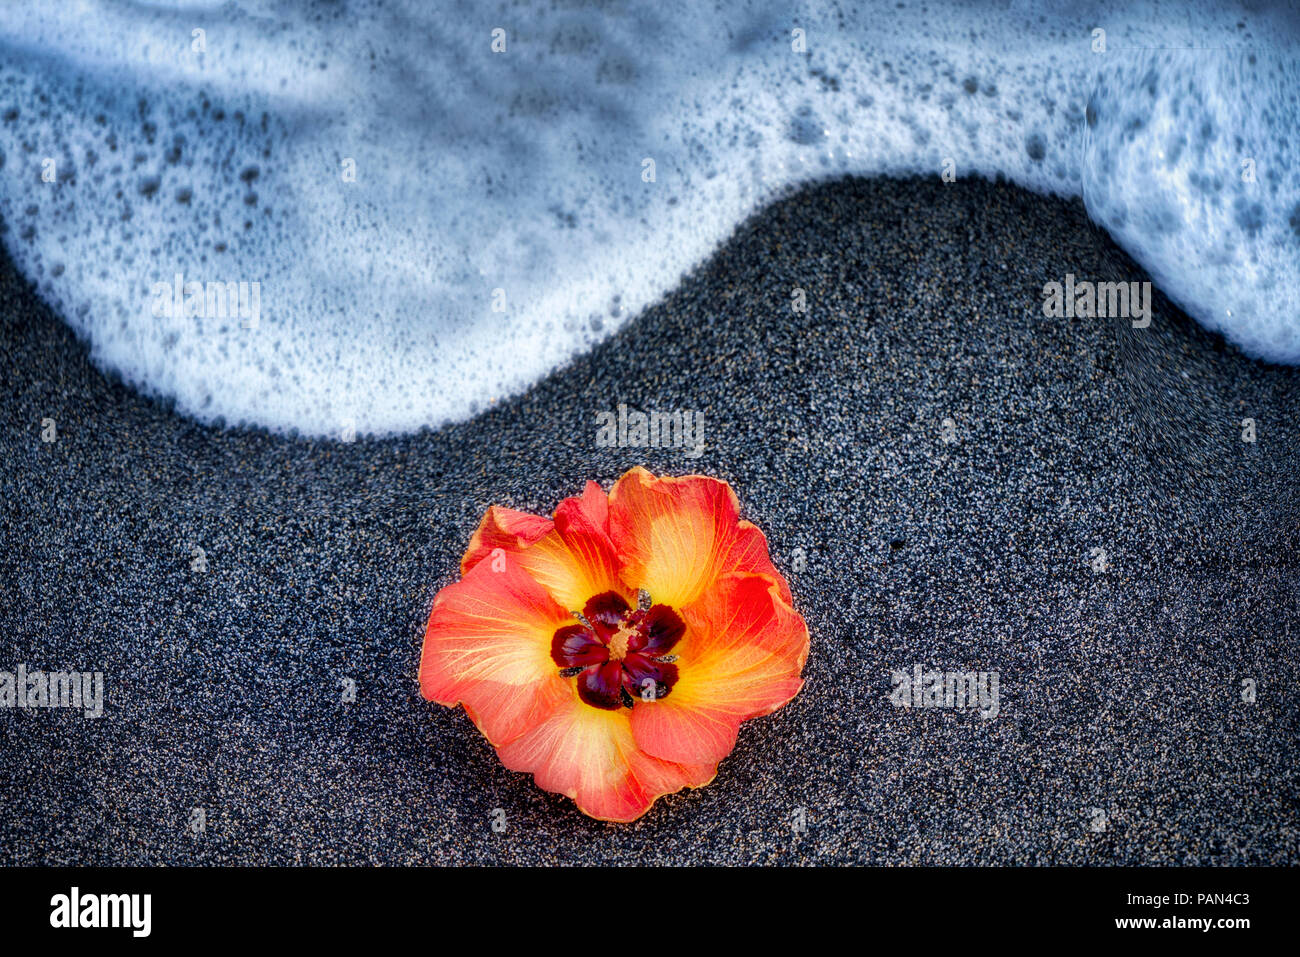 African Tulip Tree blossom sur plage de sable noir avec des vagues. New York, la Grande Île Banque D'Images